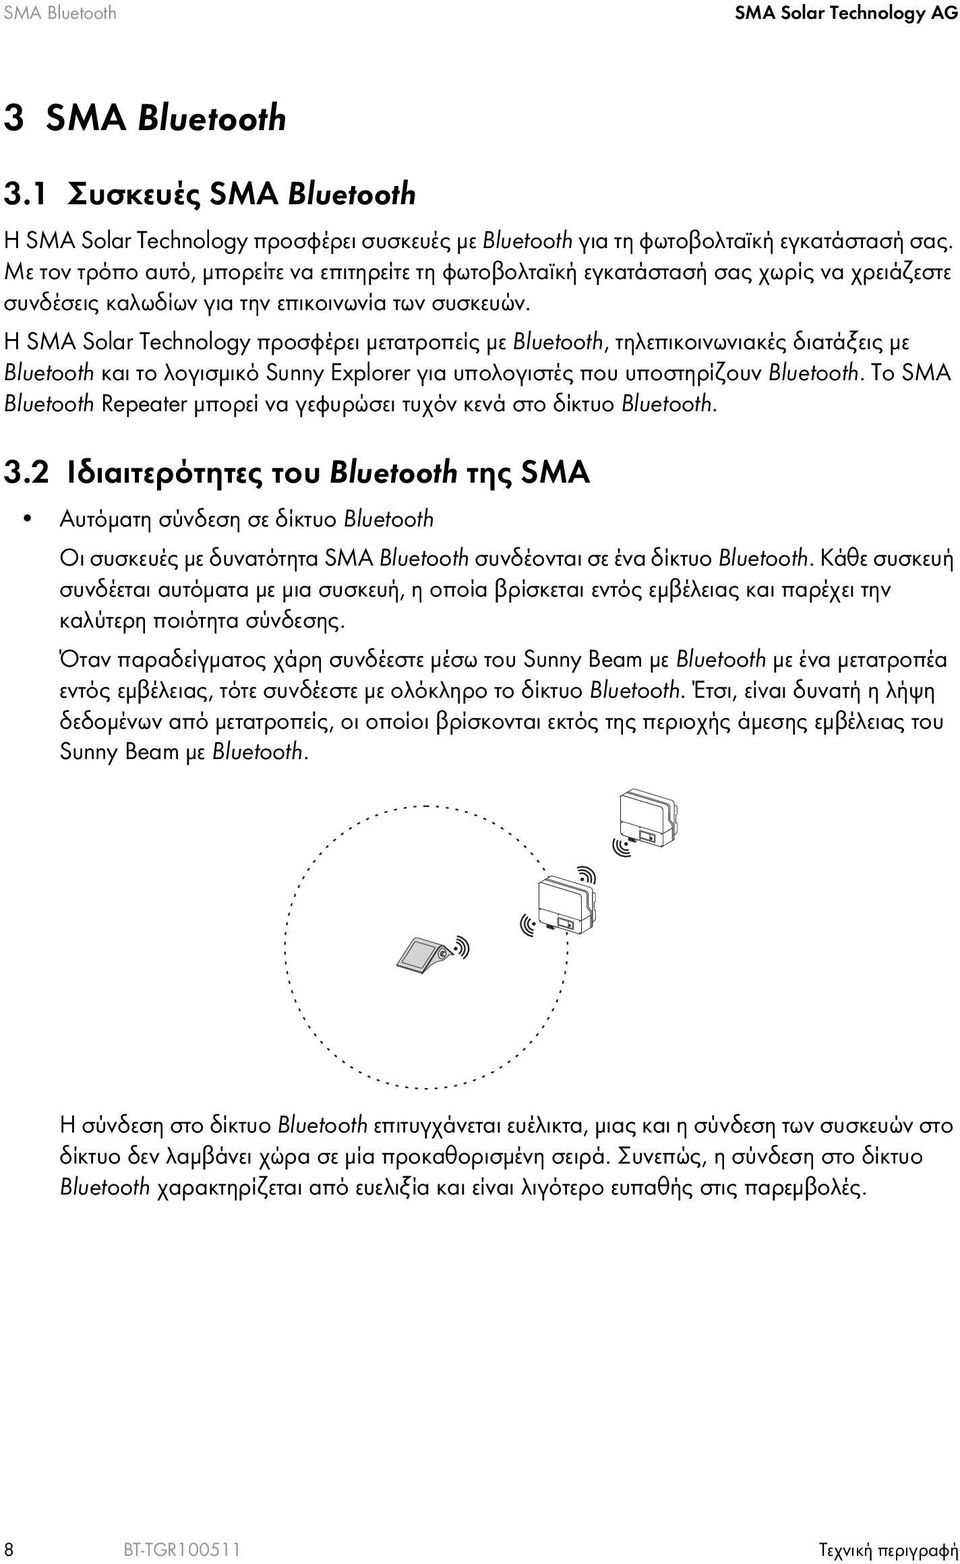 Η SMA Solar Technology προσφέρει μετατροπείς με Bluetooth, τηλεπικοινωνιακές διατάξεις με Bluetooth και το λογισμικό Sunny Explorer για υπολογιστές που υποστηρίζουν Bluetooth.